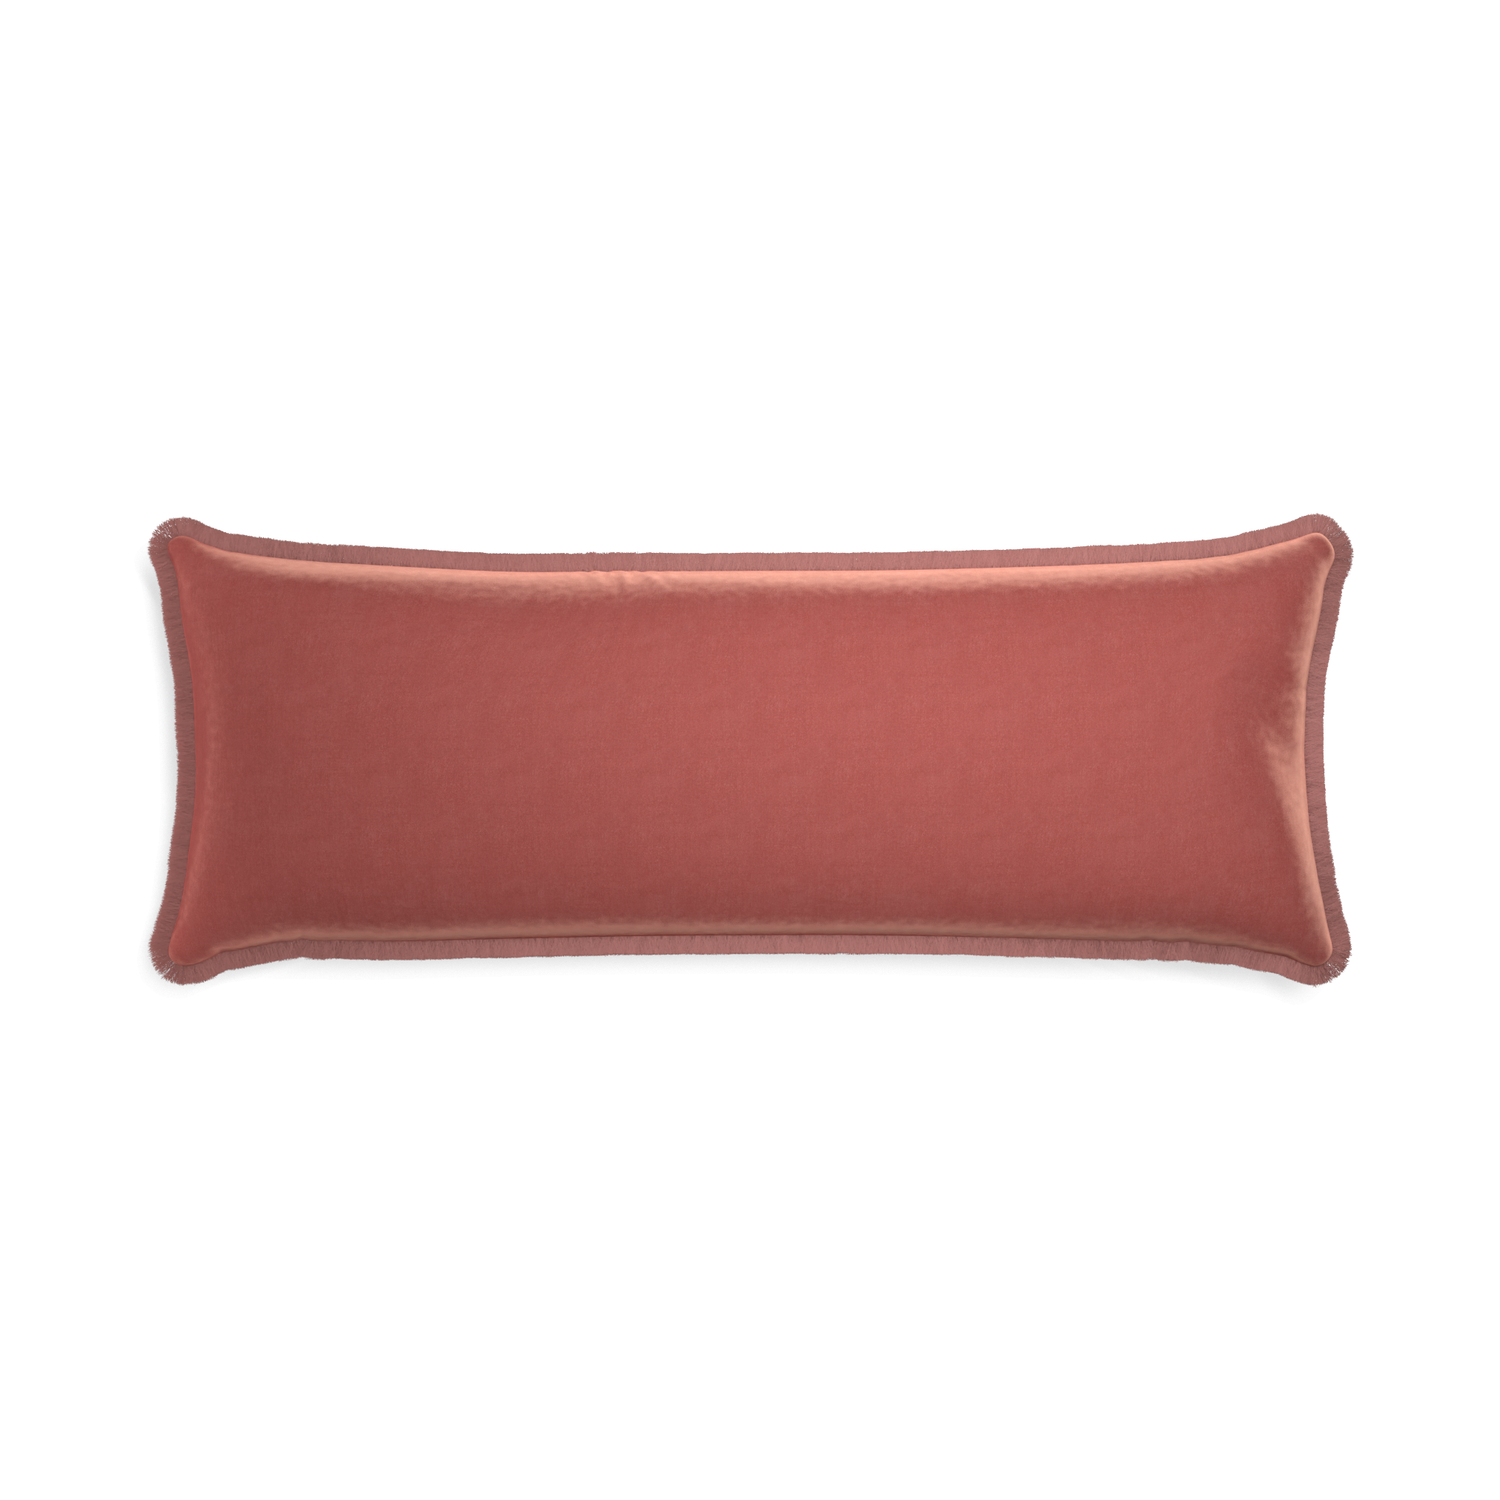 Xl-lumbar cosmo velvet custom pillow with d fringe on white background